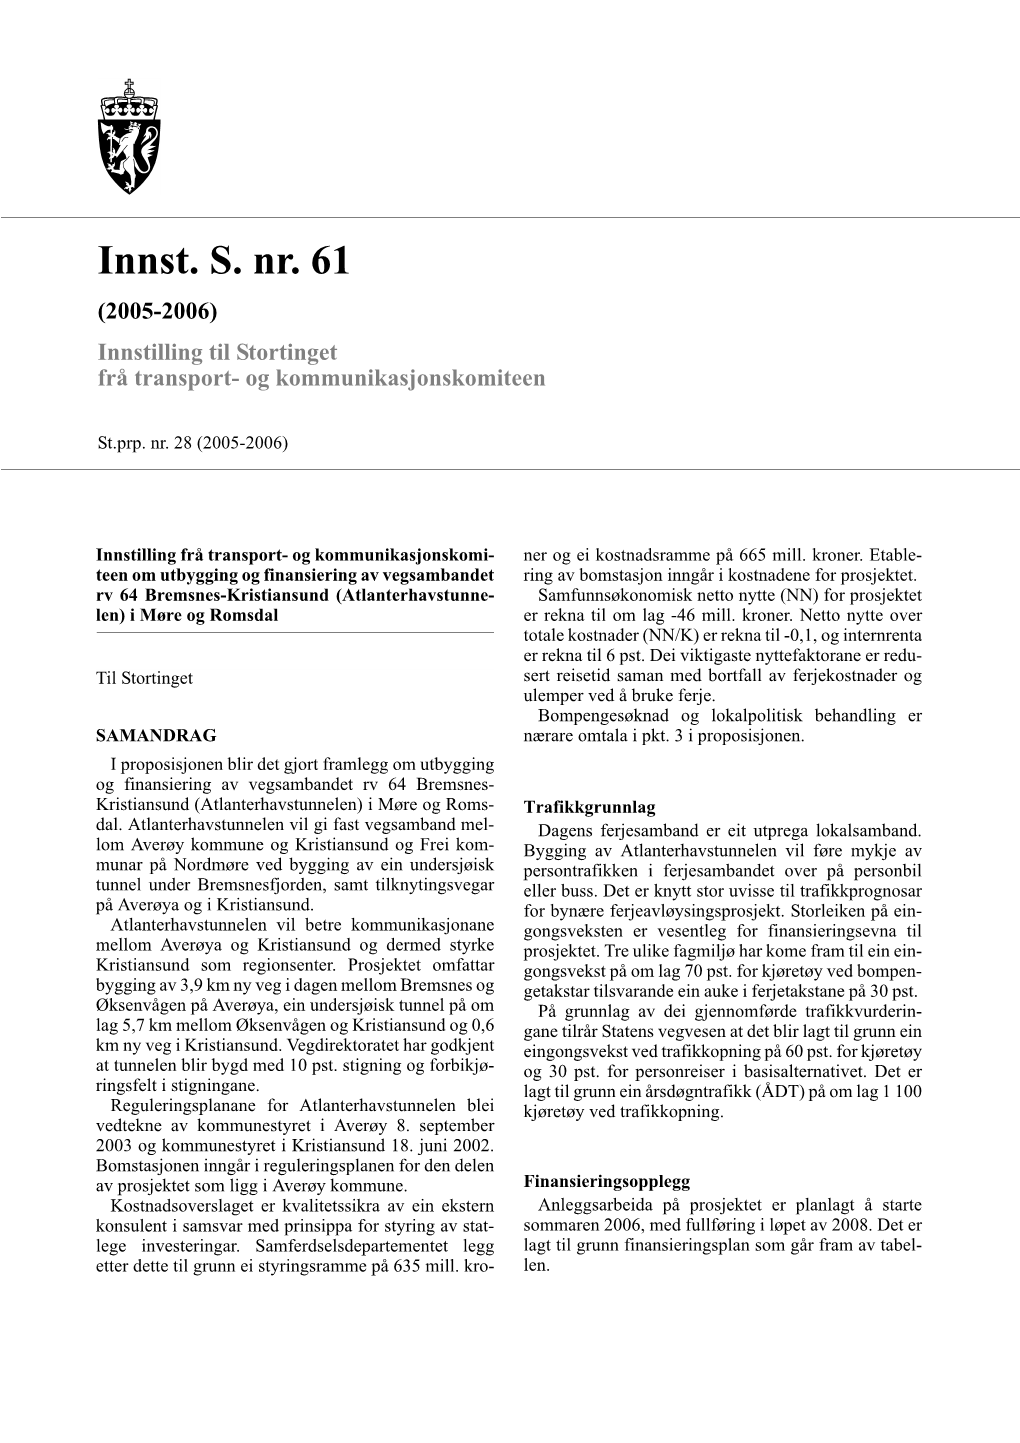 Innst. S. Nr. 61 (2005-2006) Innstilling Til Stortinget Frå Transport- Og Kommunikasjonskomiteen